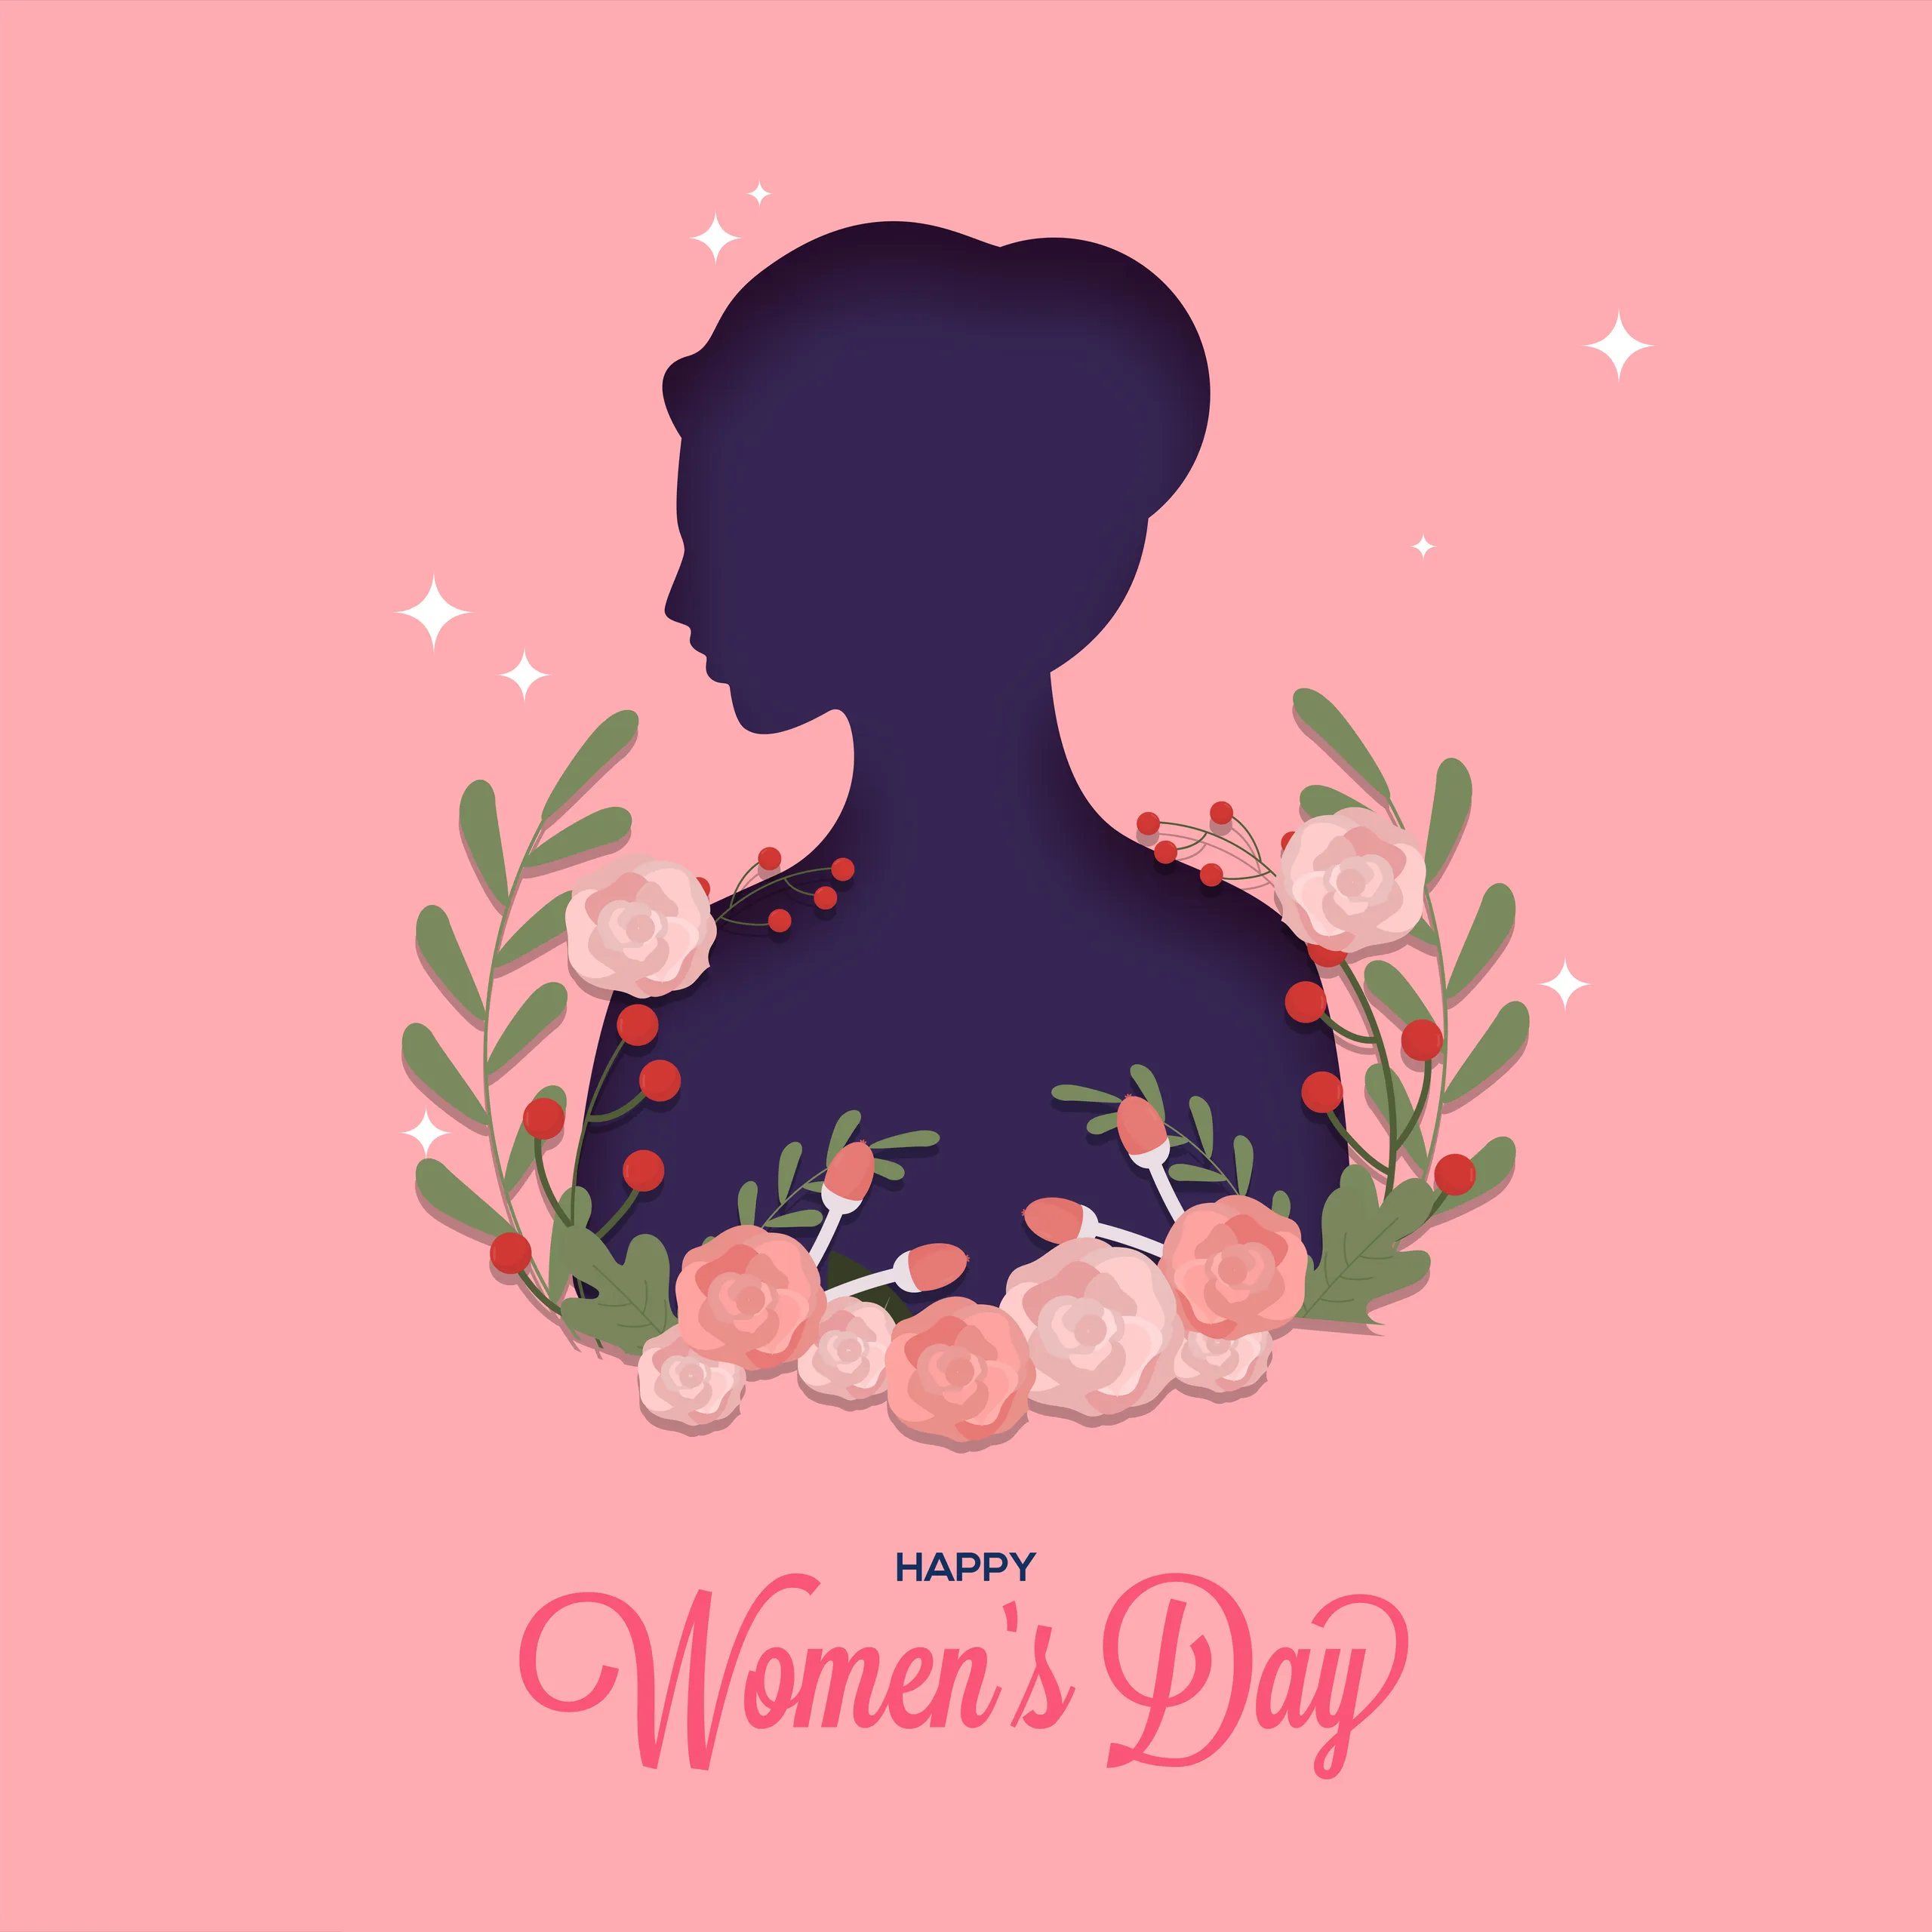 Free Happy Women's Day Freepik Style Vector Image